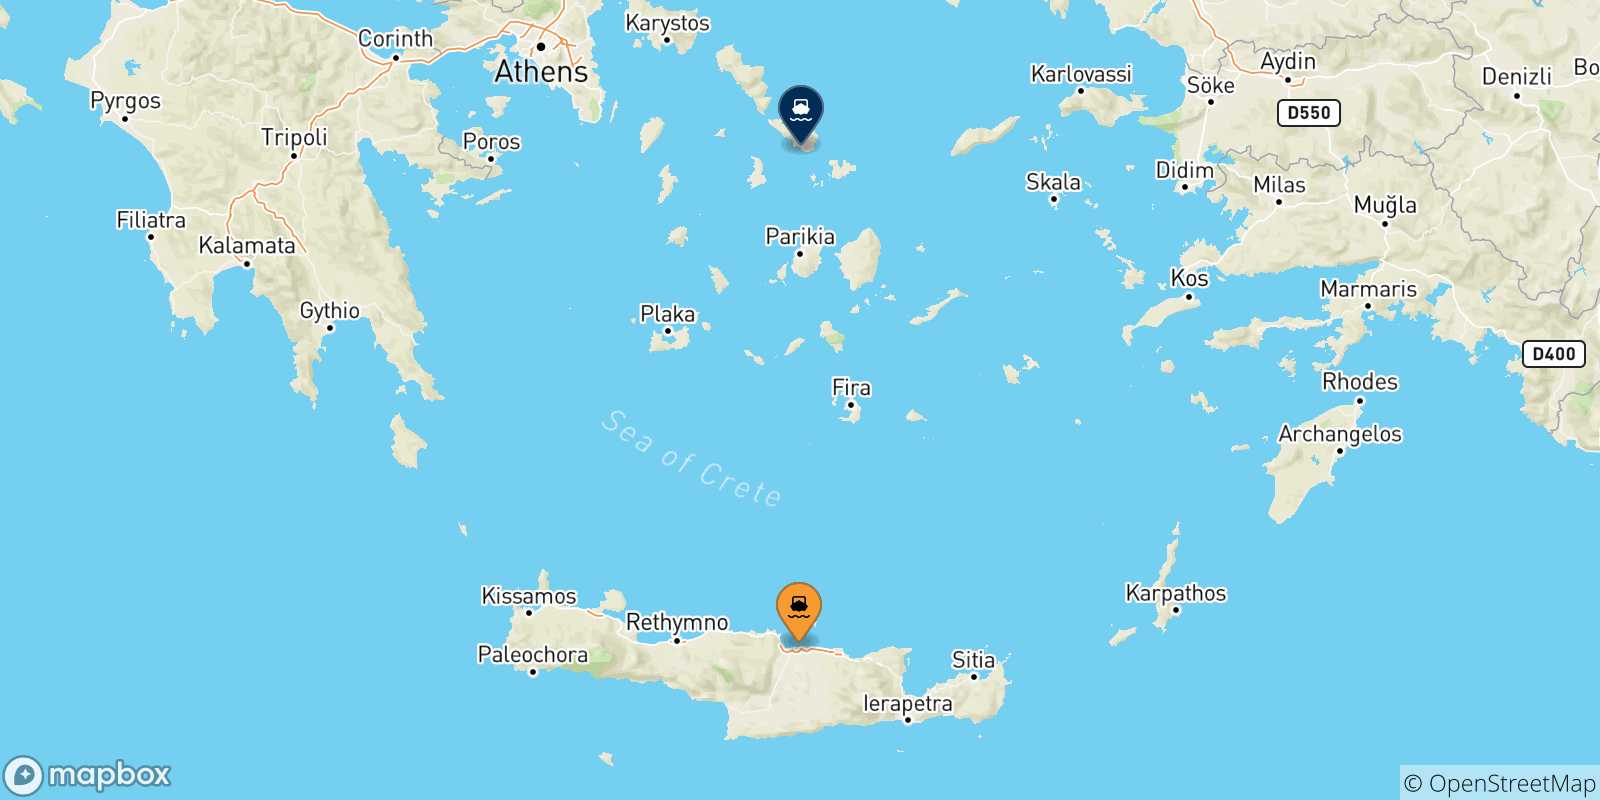 Mappa delle possibili rotte tra Creta e Tinos